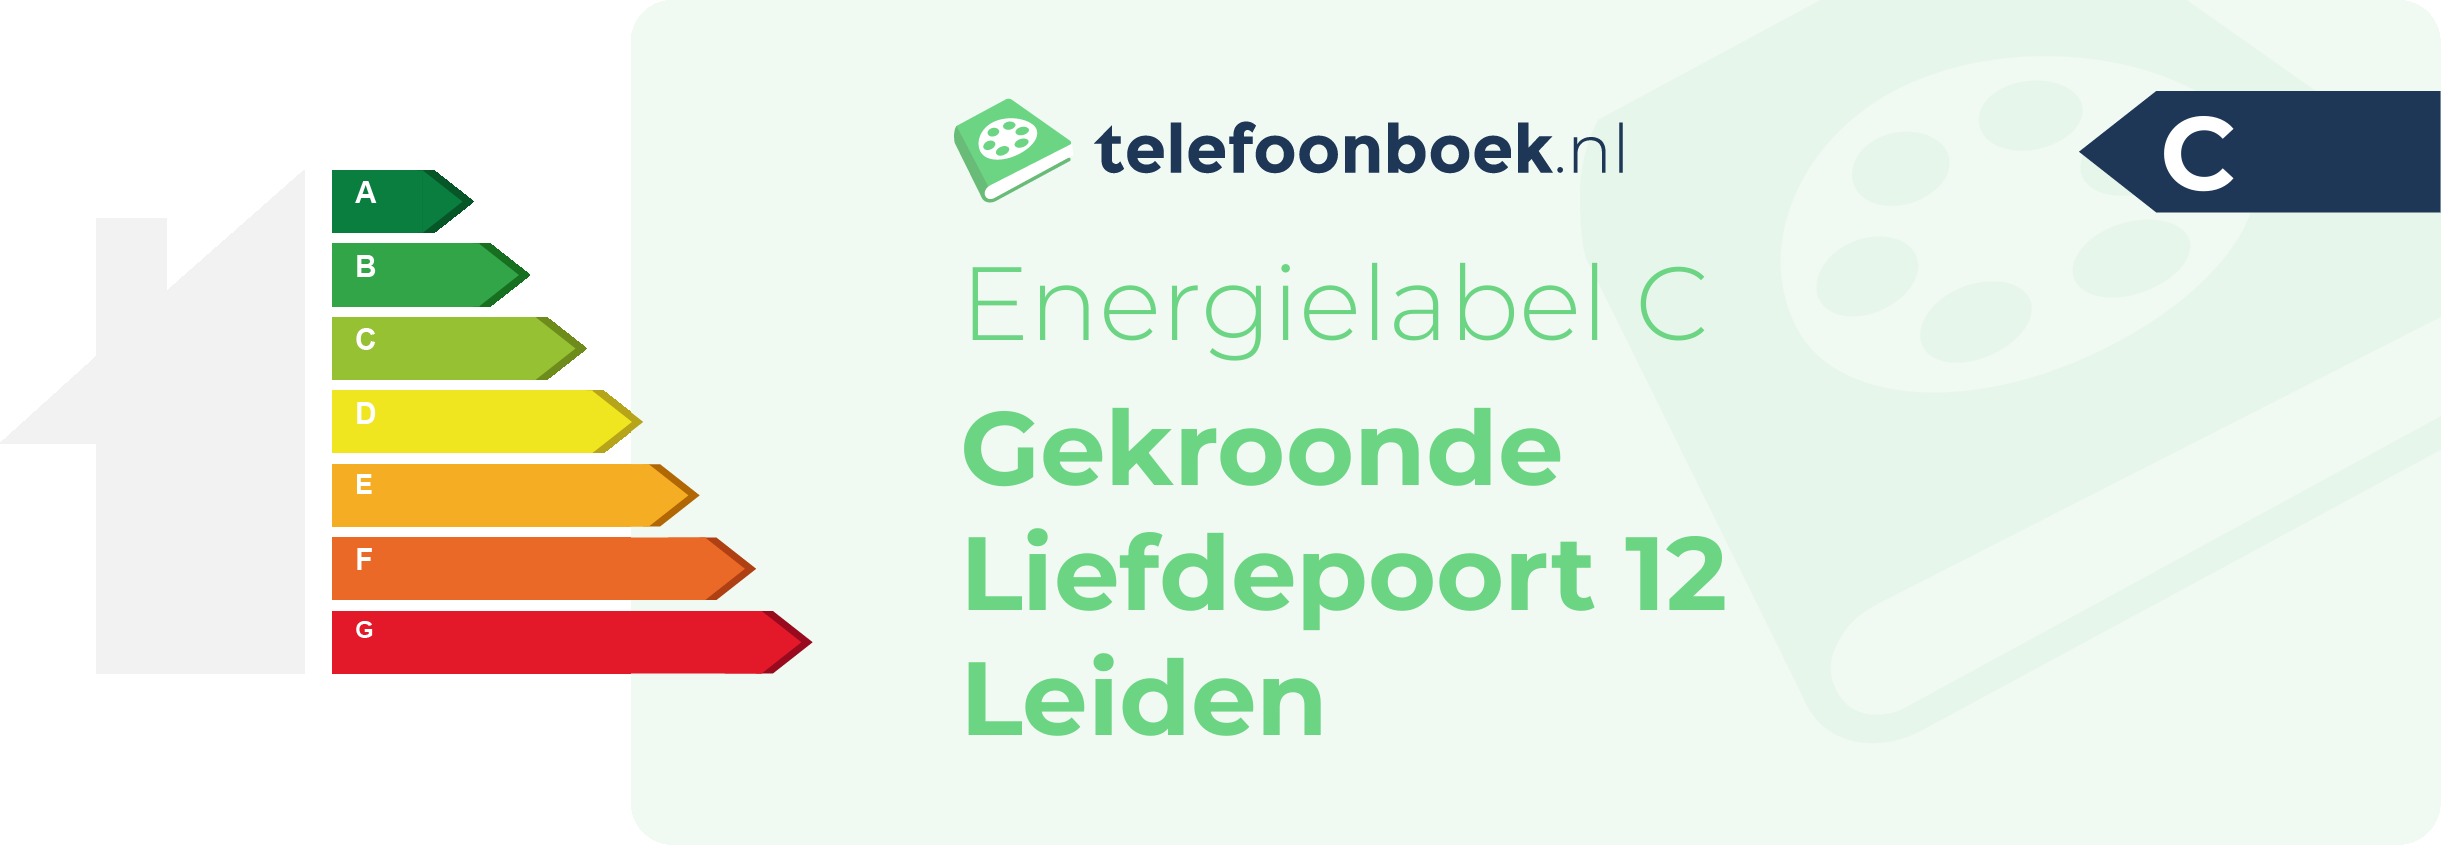 Energielabel Gekroonde Liefdepoort 12 Leiden